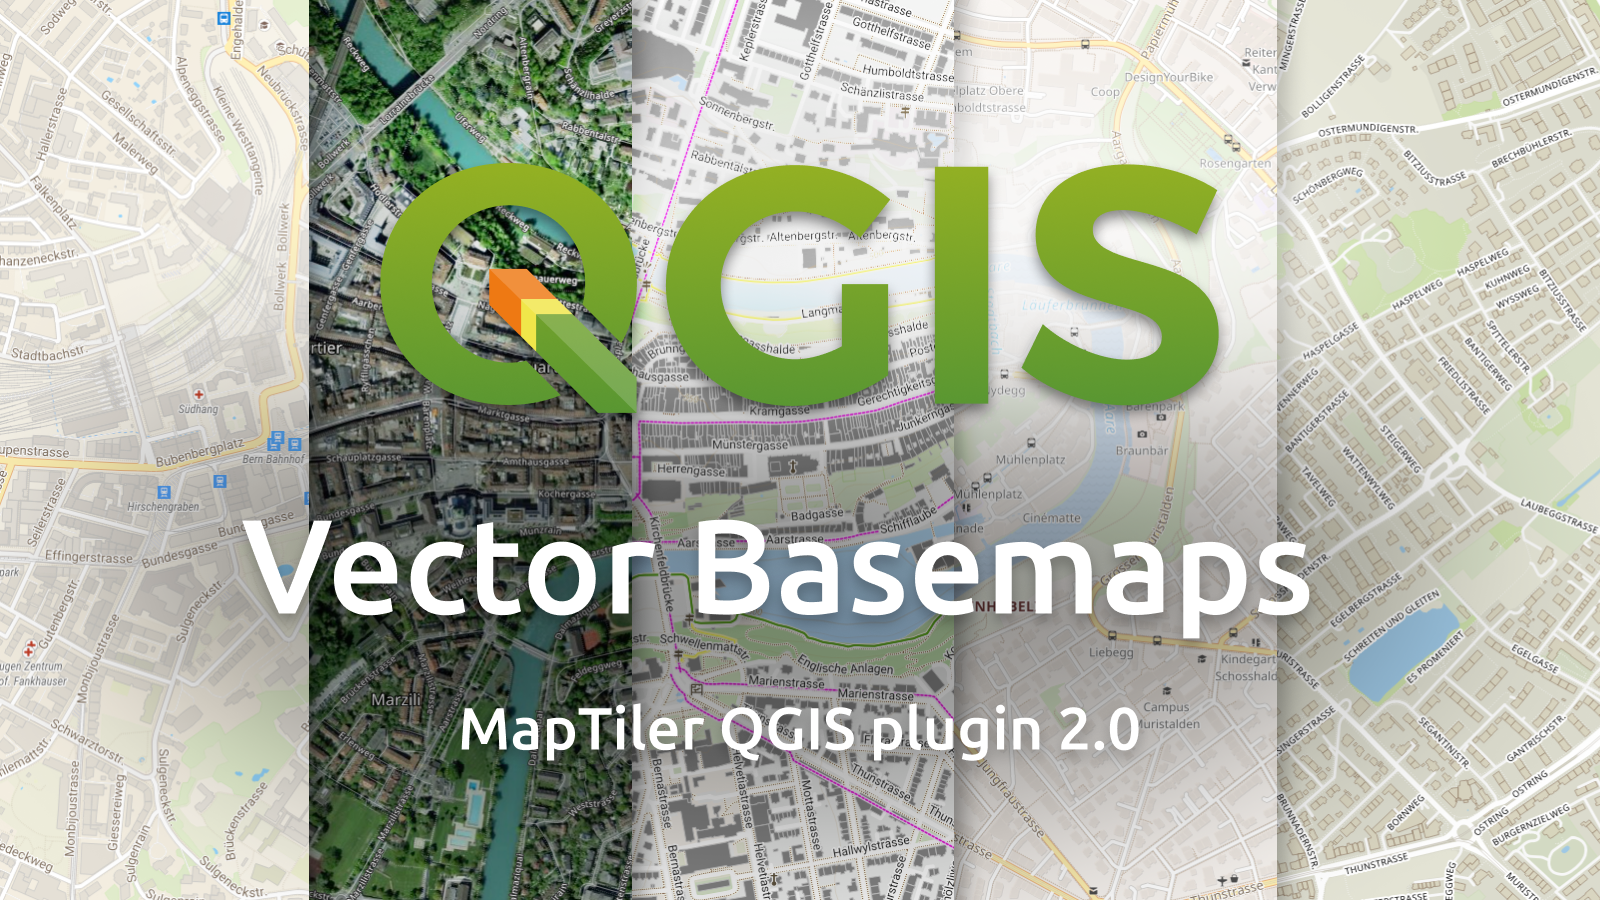 Basemaps vettoriali nell'immagine QGIS